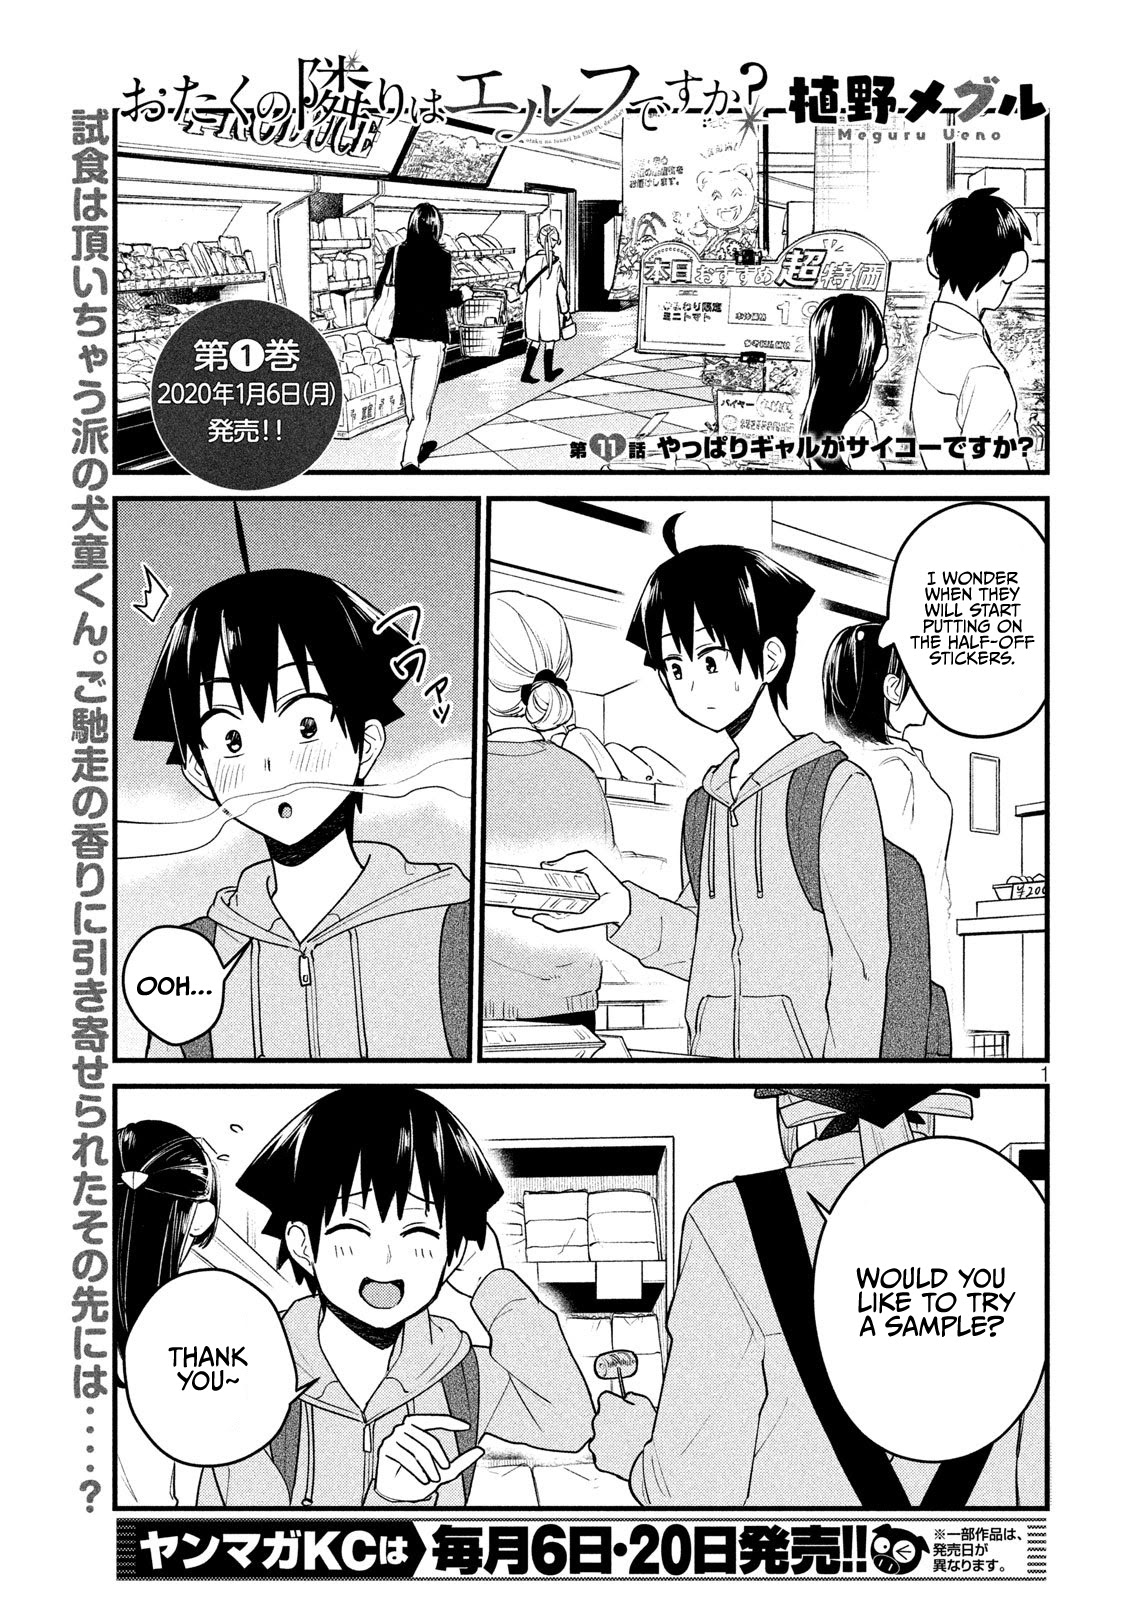 Otaku No Tonari Wa Erufu Desuka? - 11 page 1